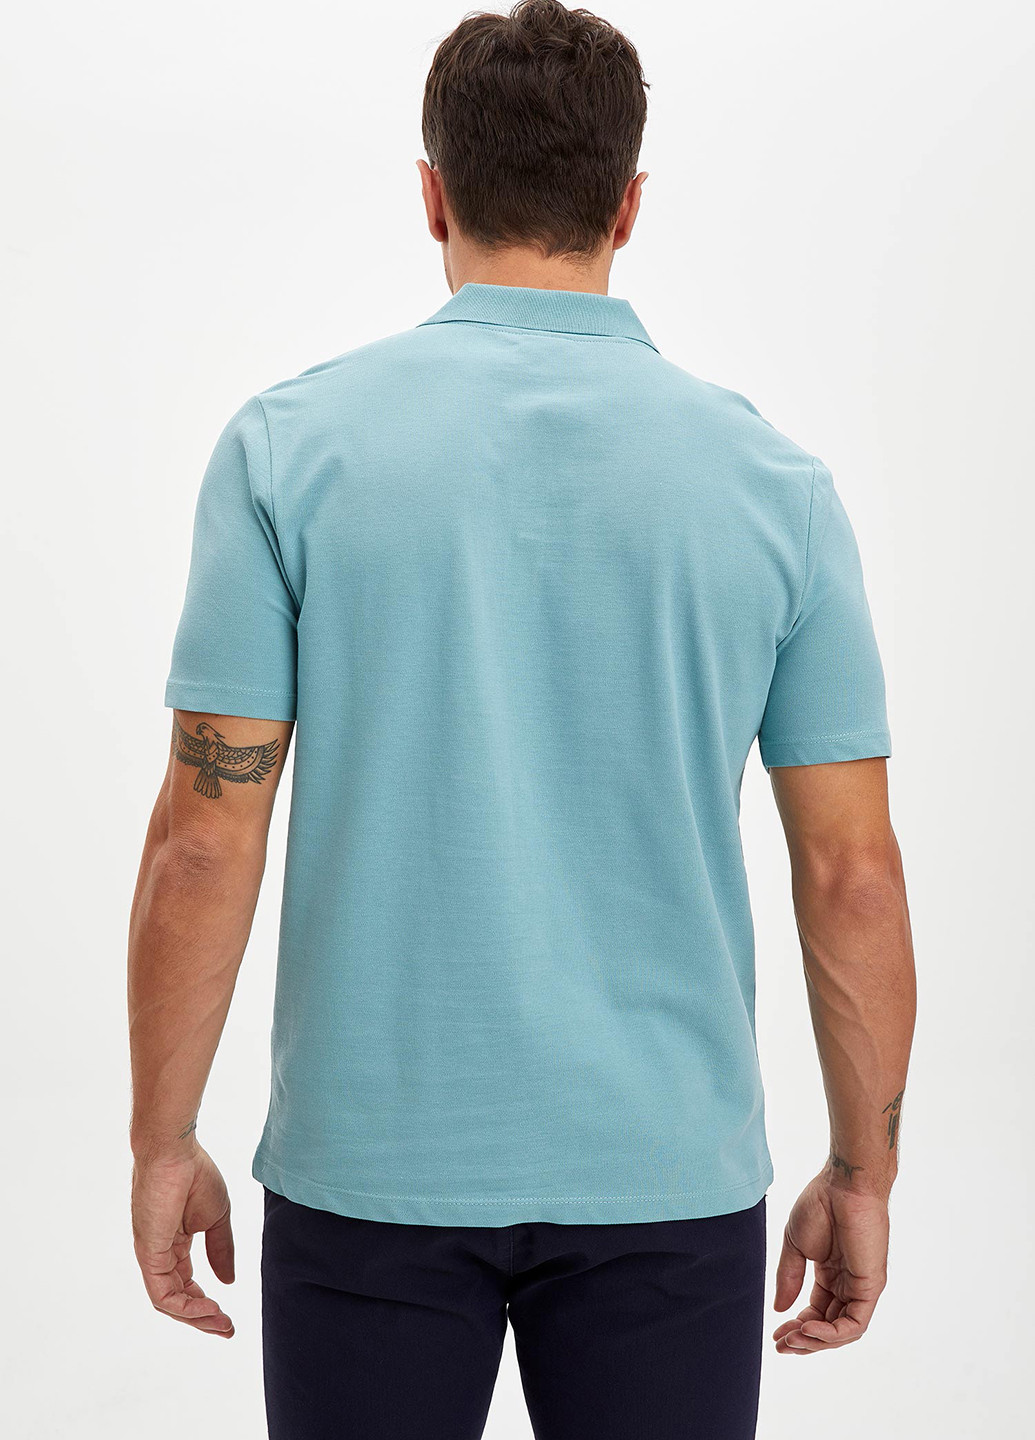 Мятная футболка-поло для мужчин DeFacto